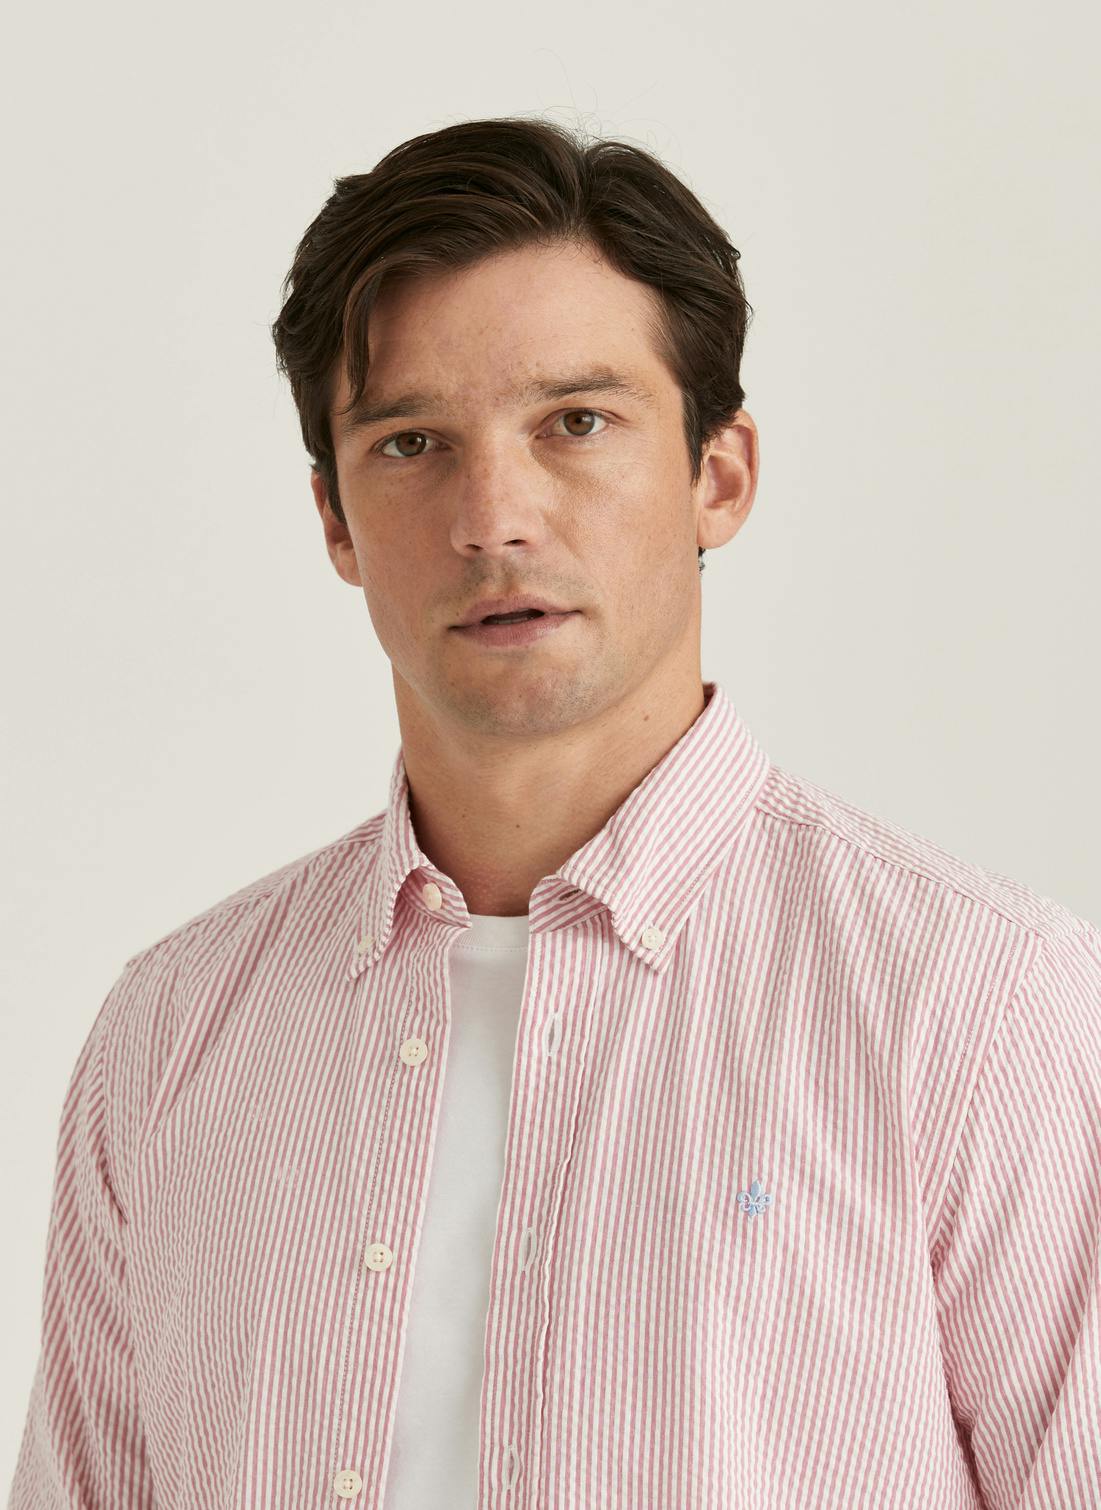 Morris Seersucker Shirt - Slim Fit